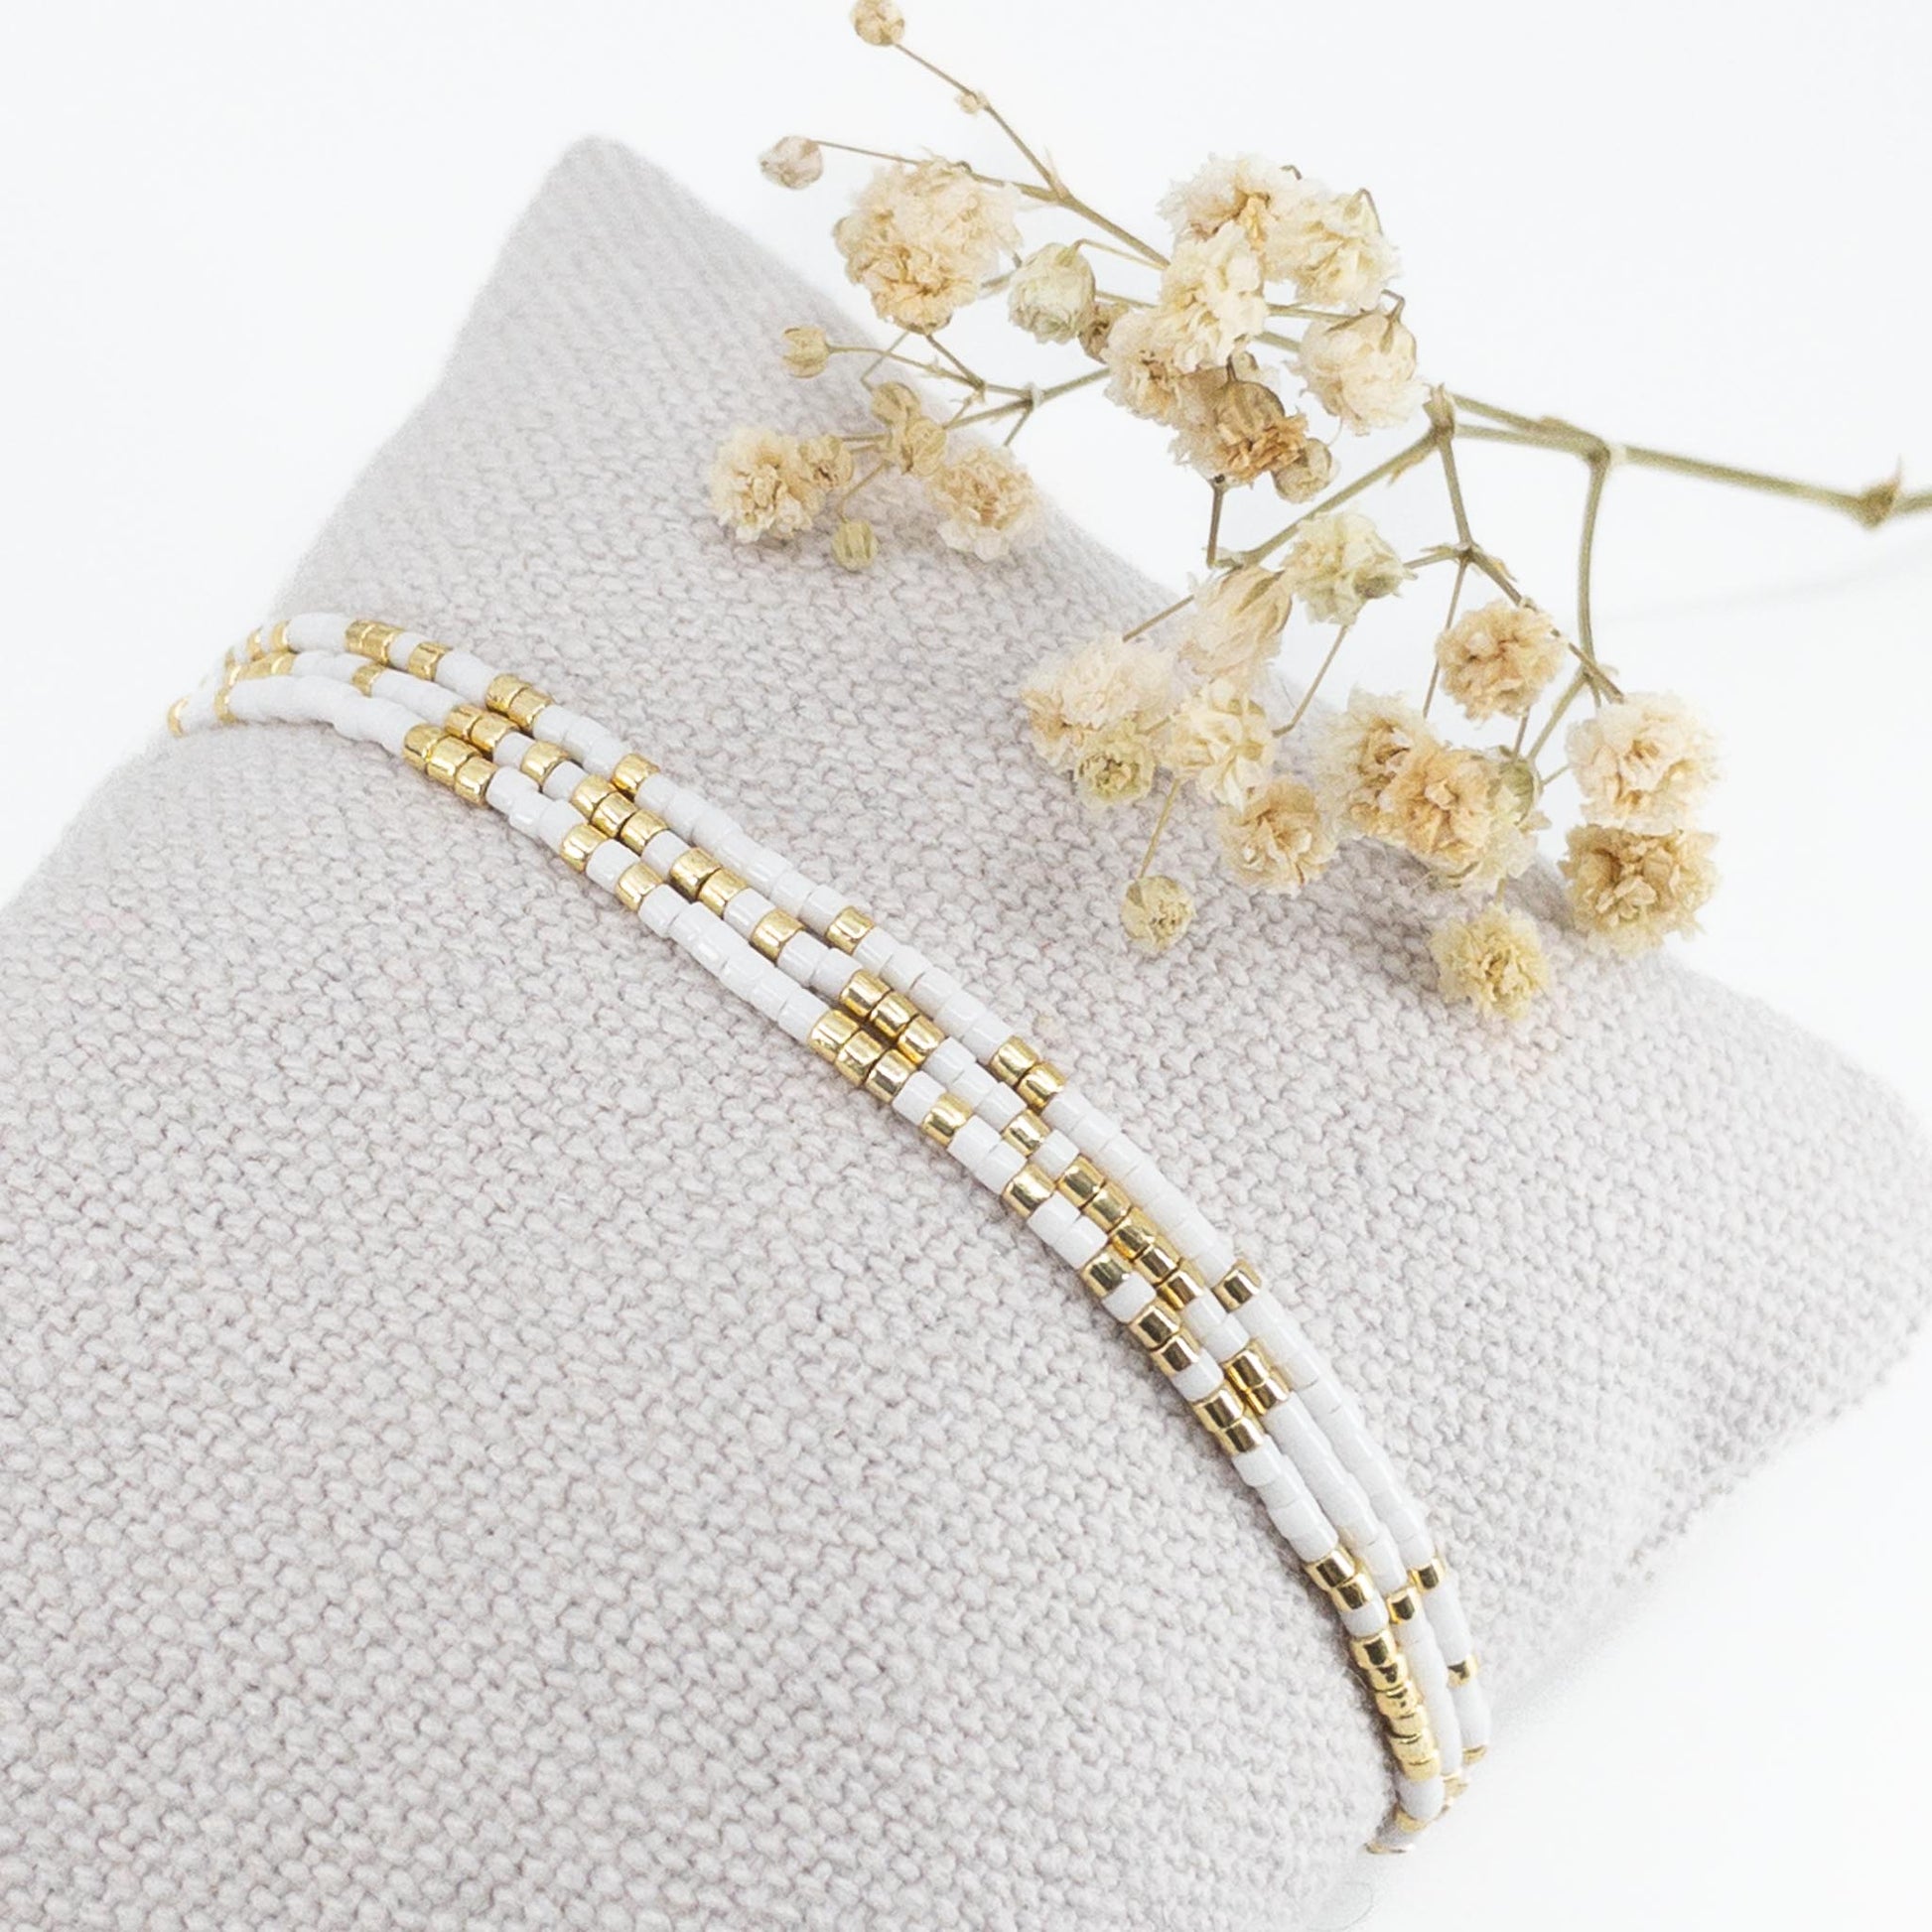 Bracelet ajustable en pierre de rocaille rose doux et or. Trois tours de poignet